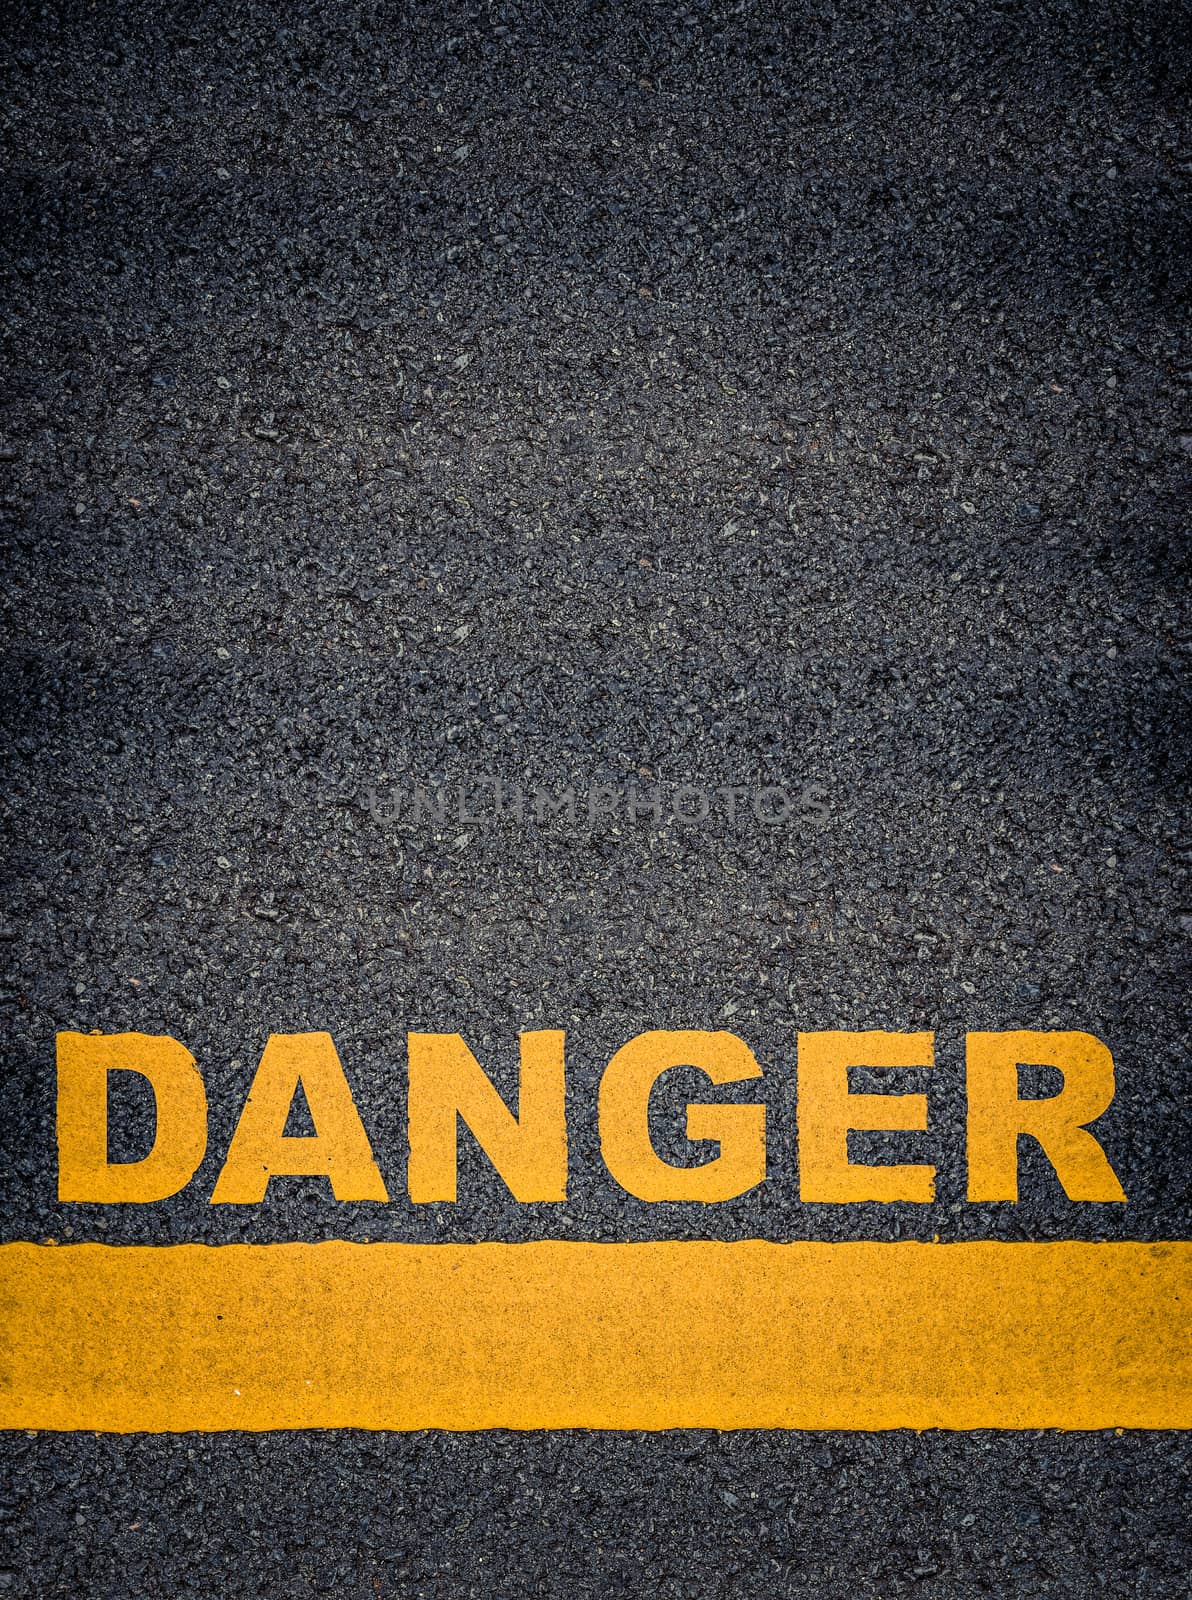 Danger Asphalt Road Markings by mrdoomits